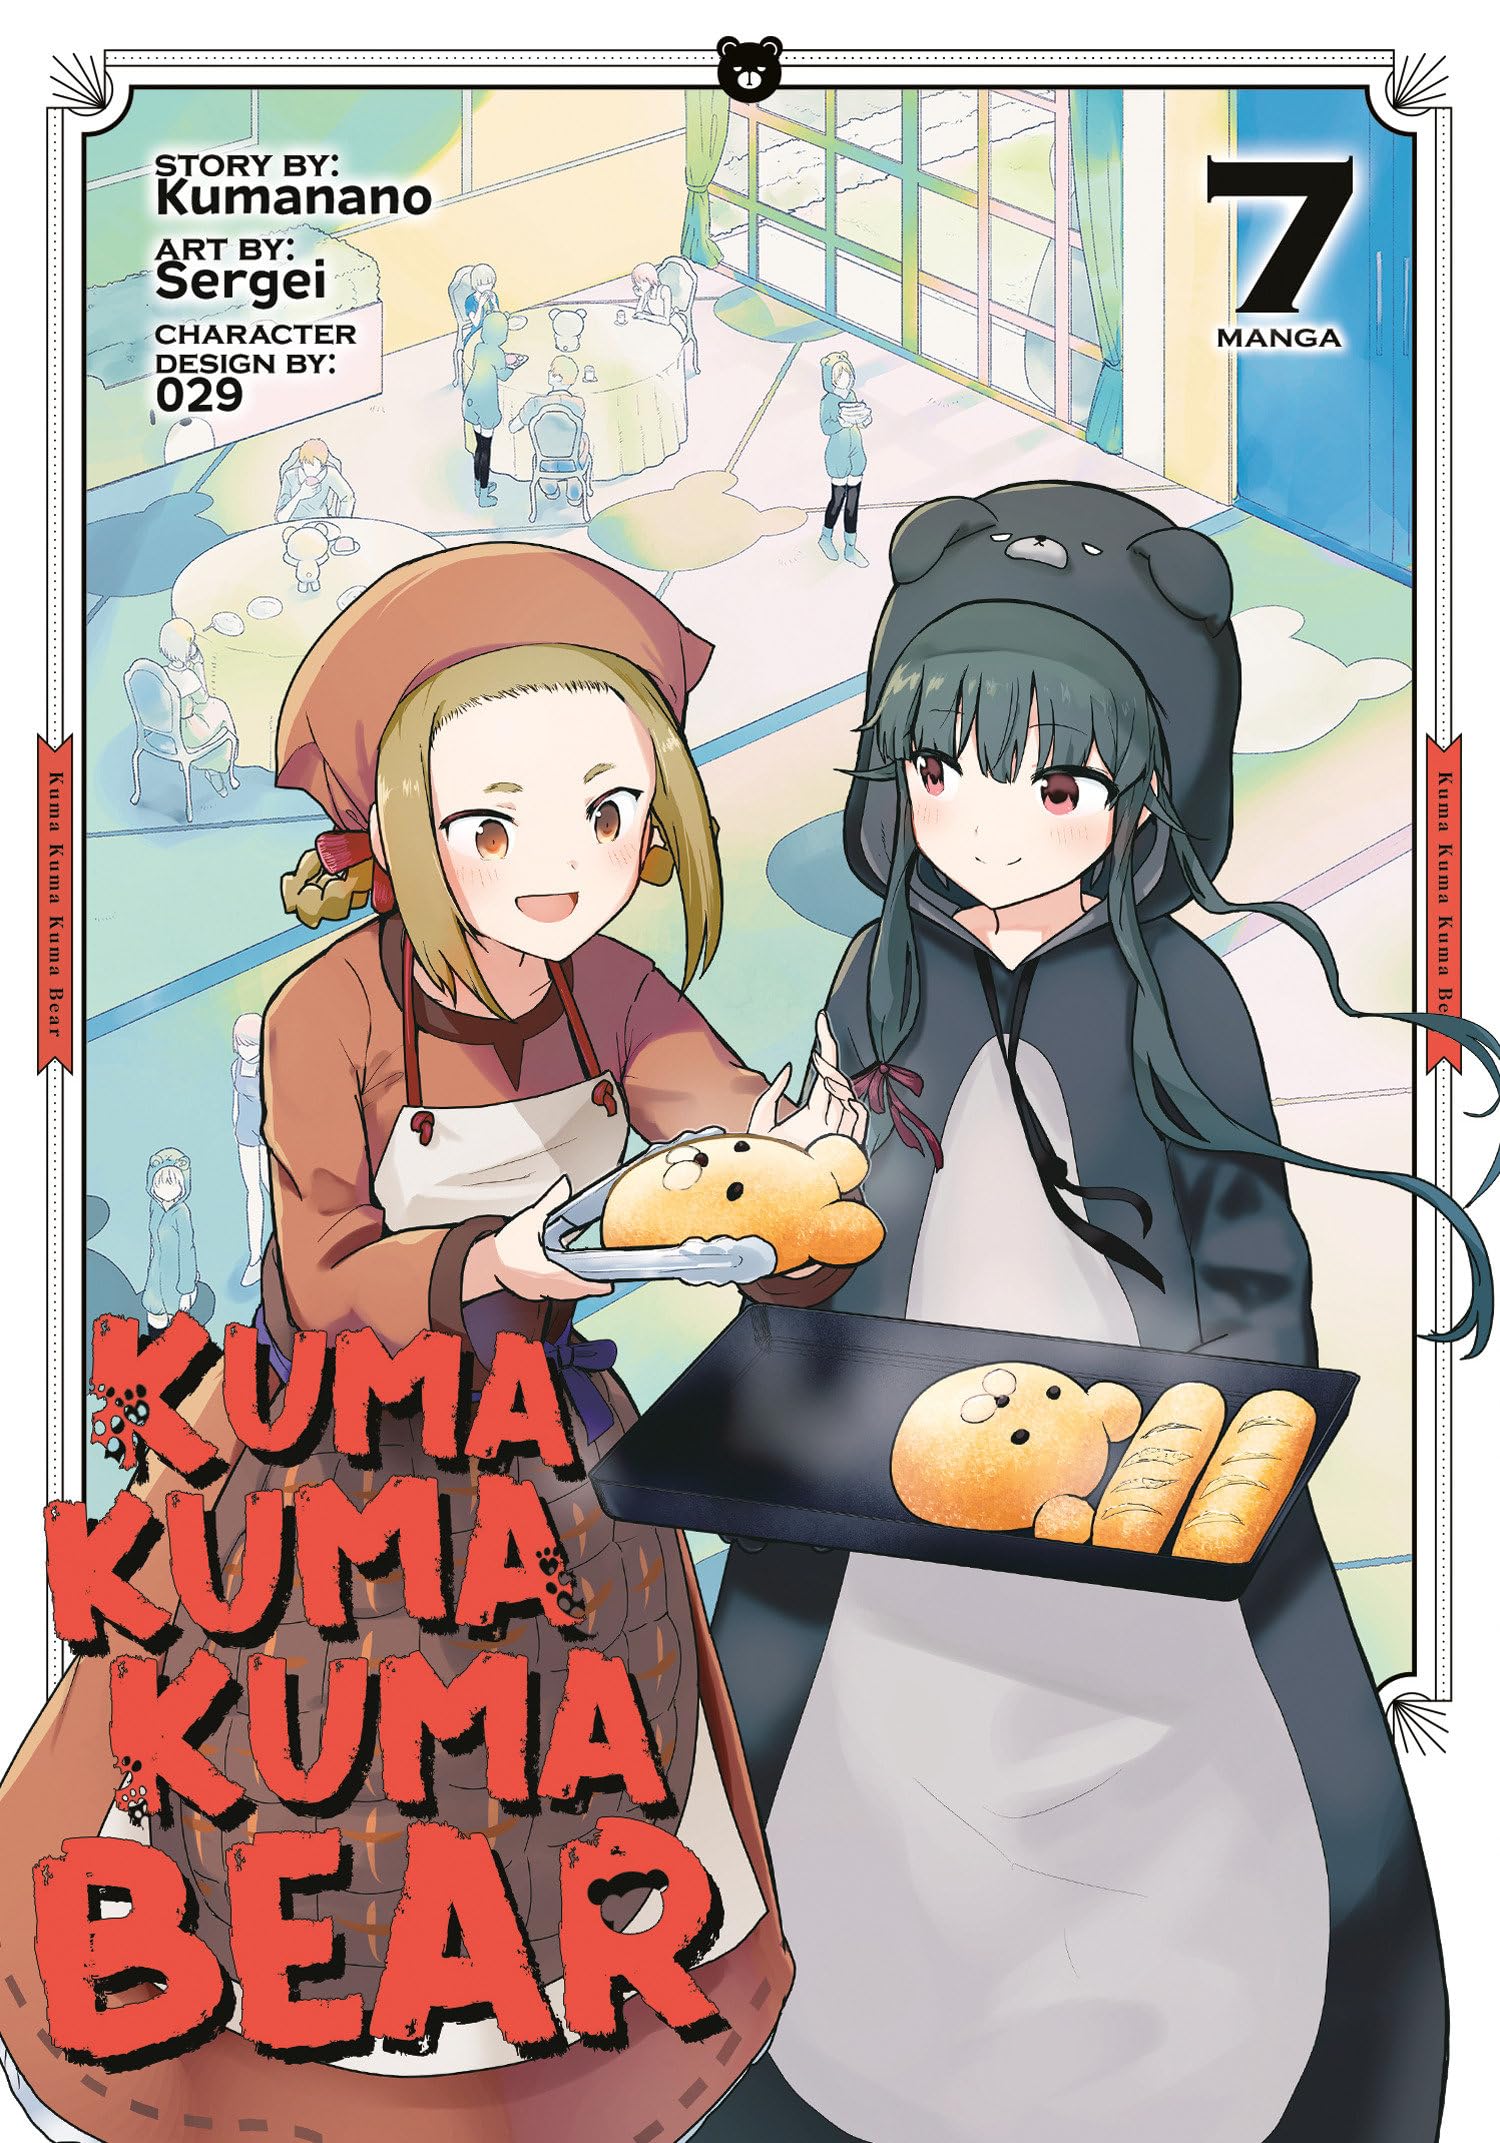 Kuma Kuma Kuma Bear (Manga) Vol. 07